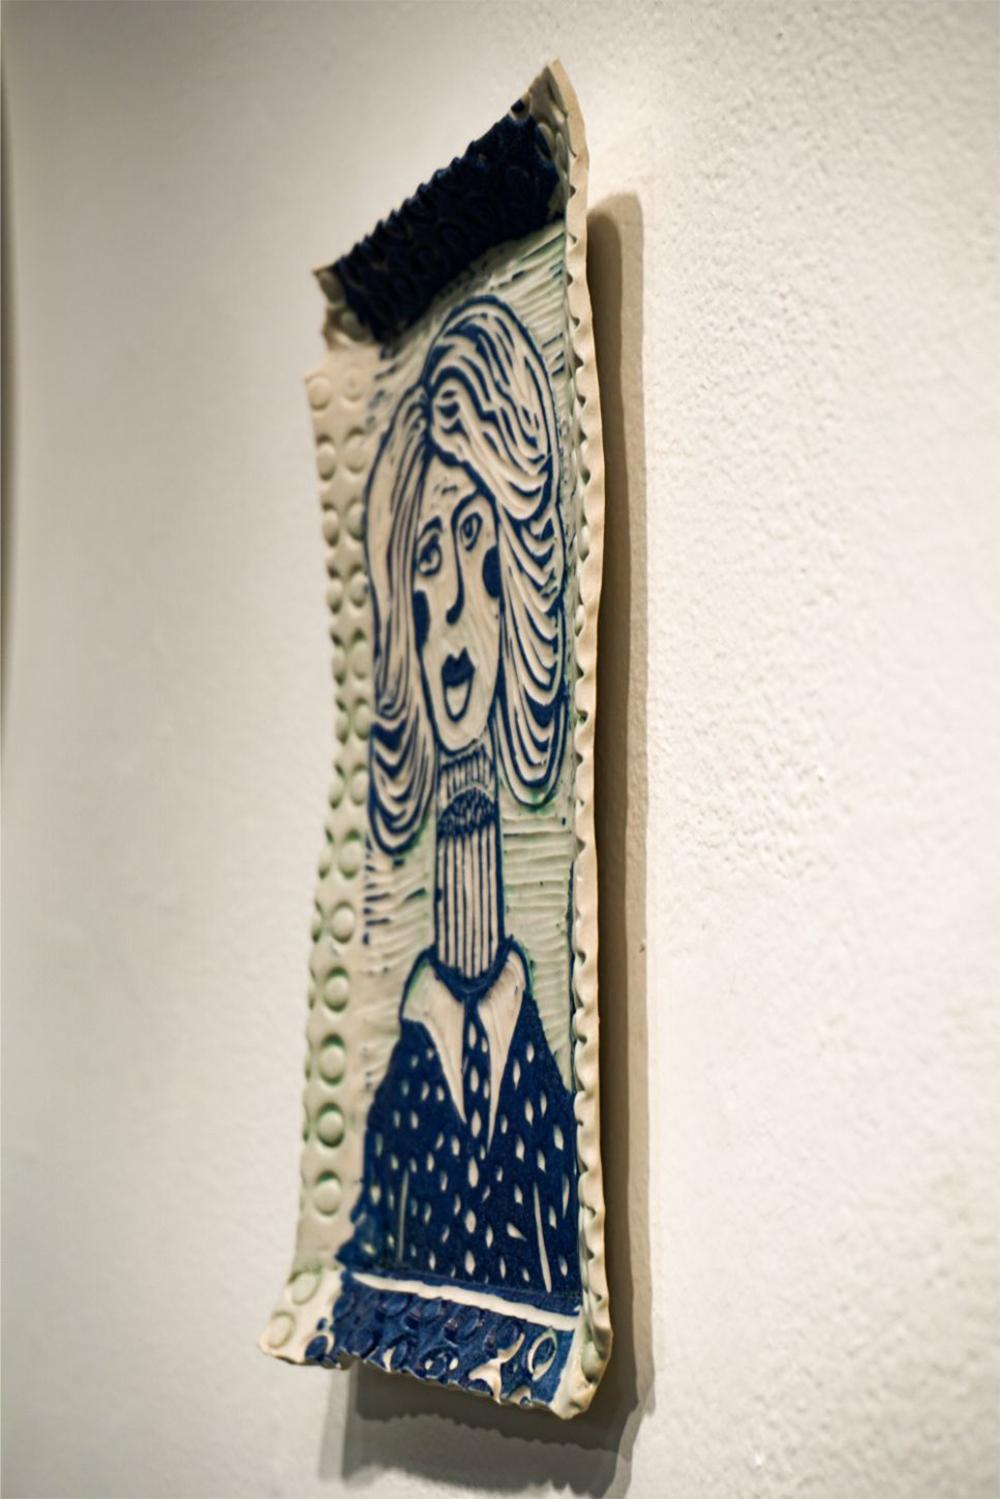 Montagne d'une femme, 2019 par Alex Hodge
Porcelaine sculptée
8.5 H in x 3.5 W in x 0.5 D in
Unique en son genre

Ses assiettes poétiques en porcelaine examinent et réimaginent l'histoire de l'art d'une manière qui valorise les femmes, non seulement